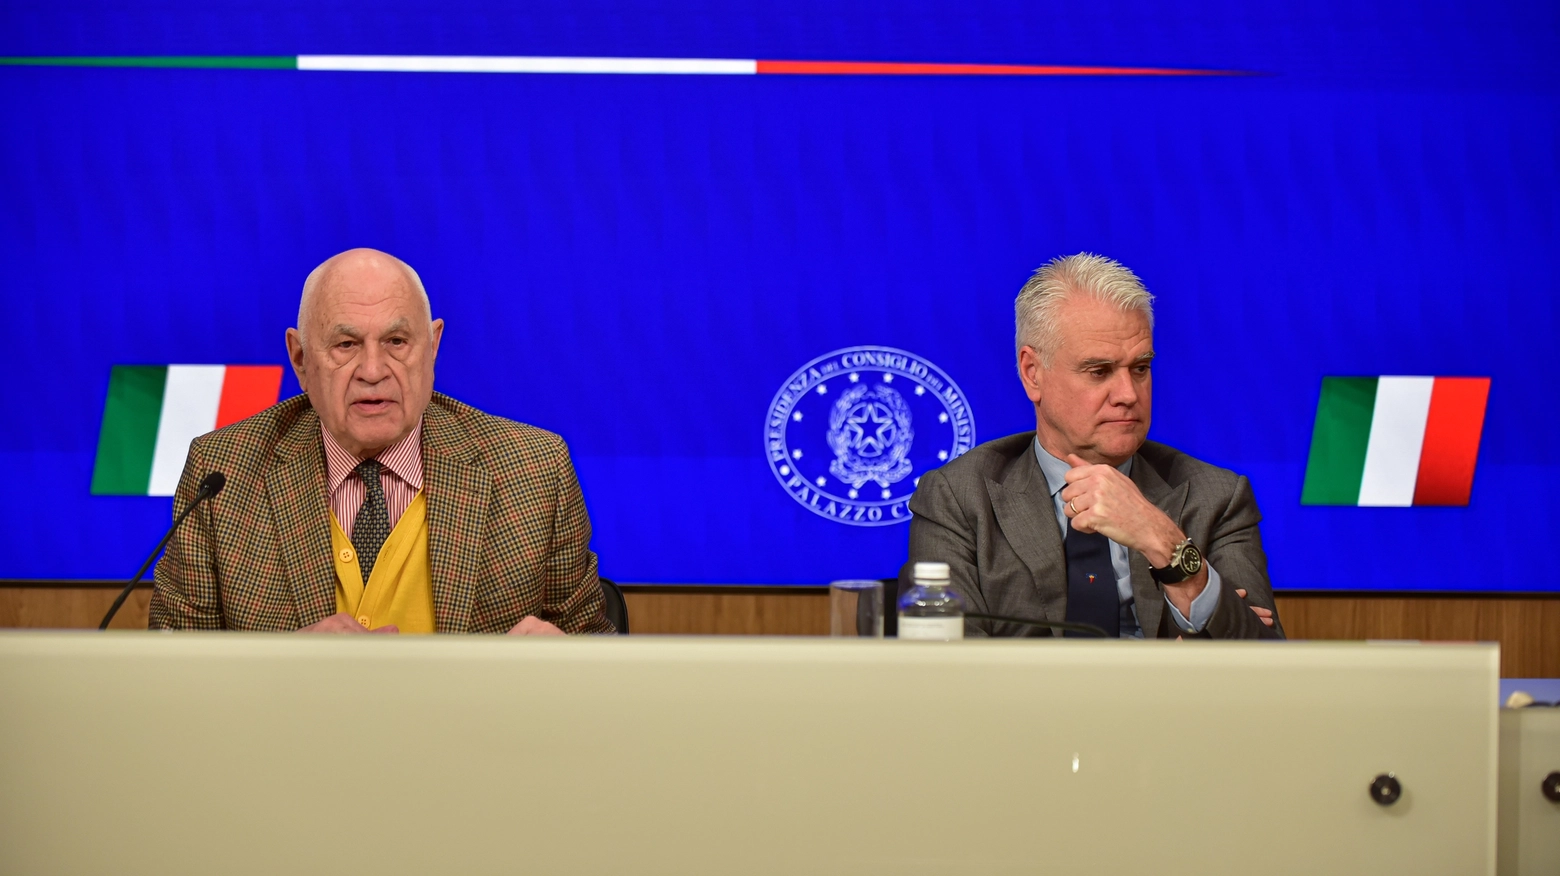 Il ministro della Giusitizia Carlo Nordio in conferenza stampa accanto al ministro Paolo Zangrillo (ImagoE)